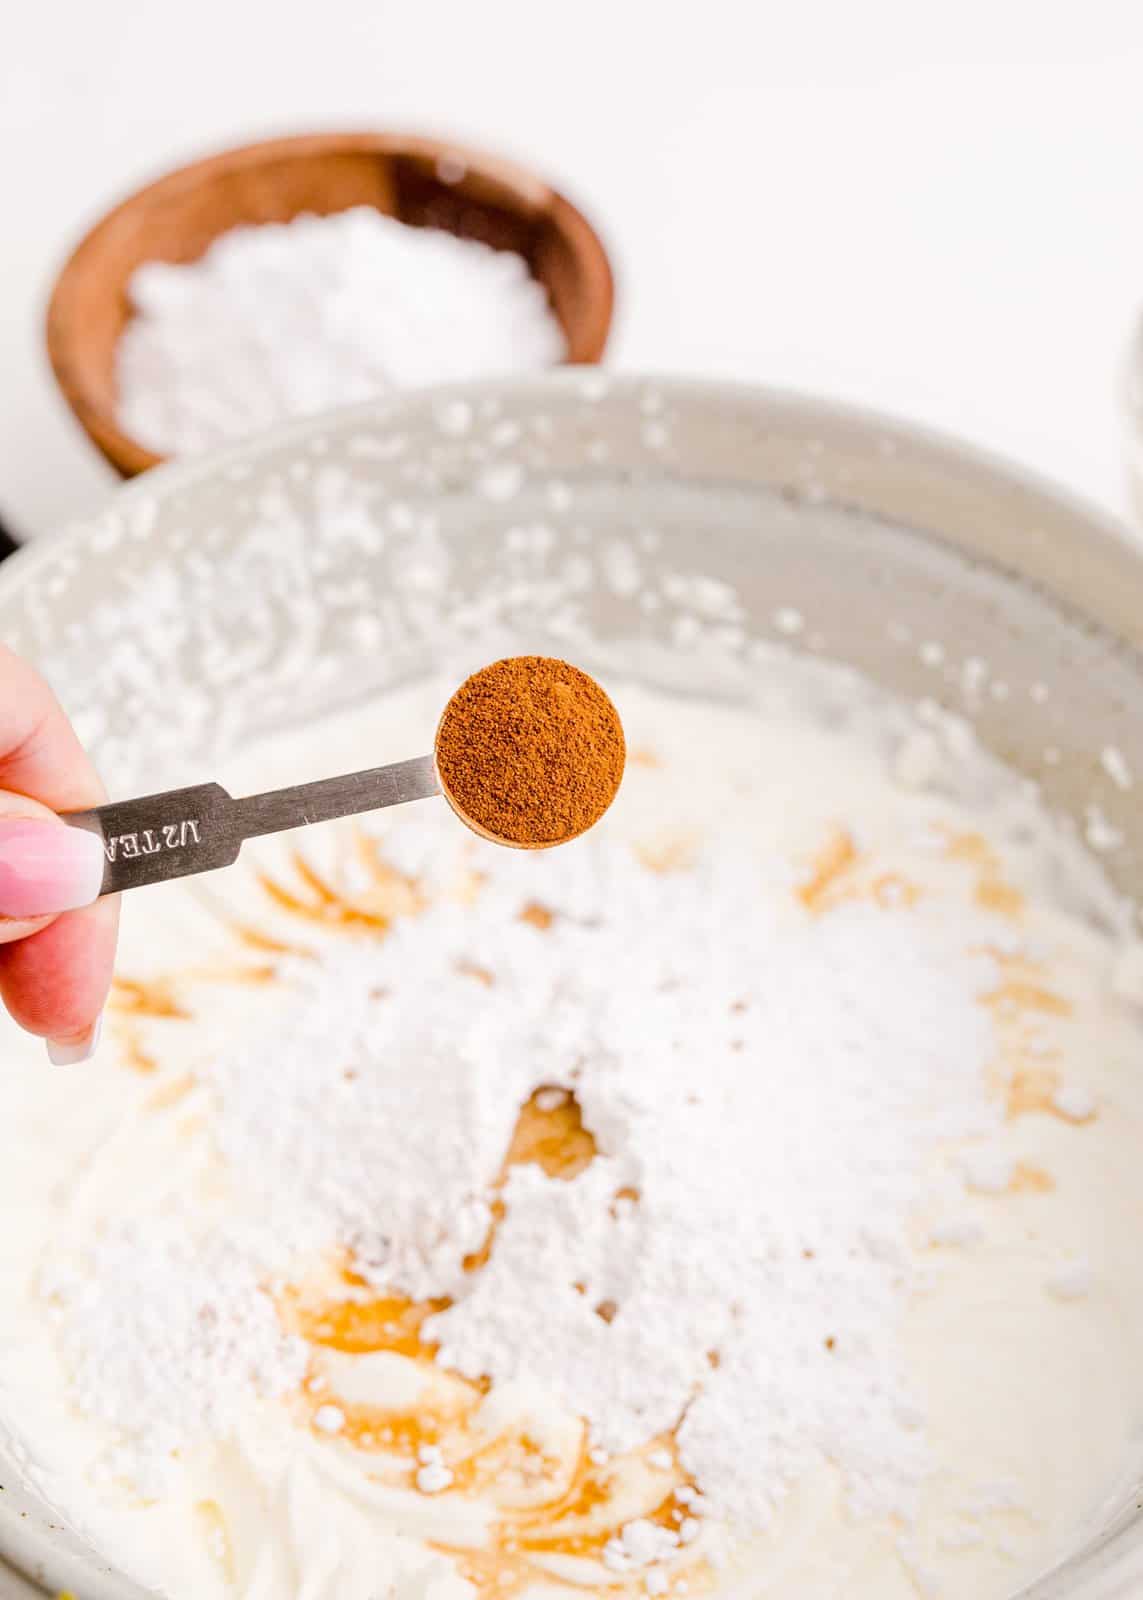 Powdered sugar, vanilla extract and cinnamon added to semi beaten whipped cream.